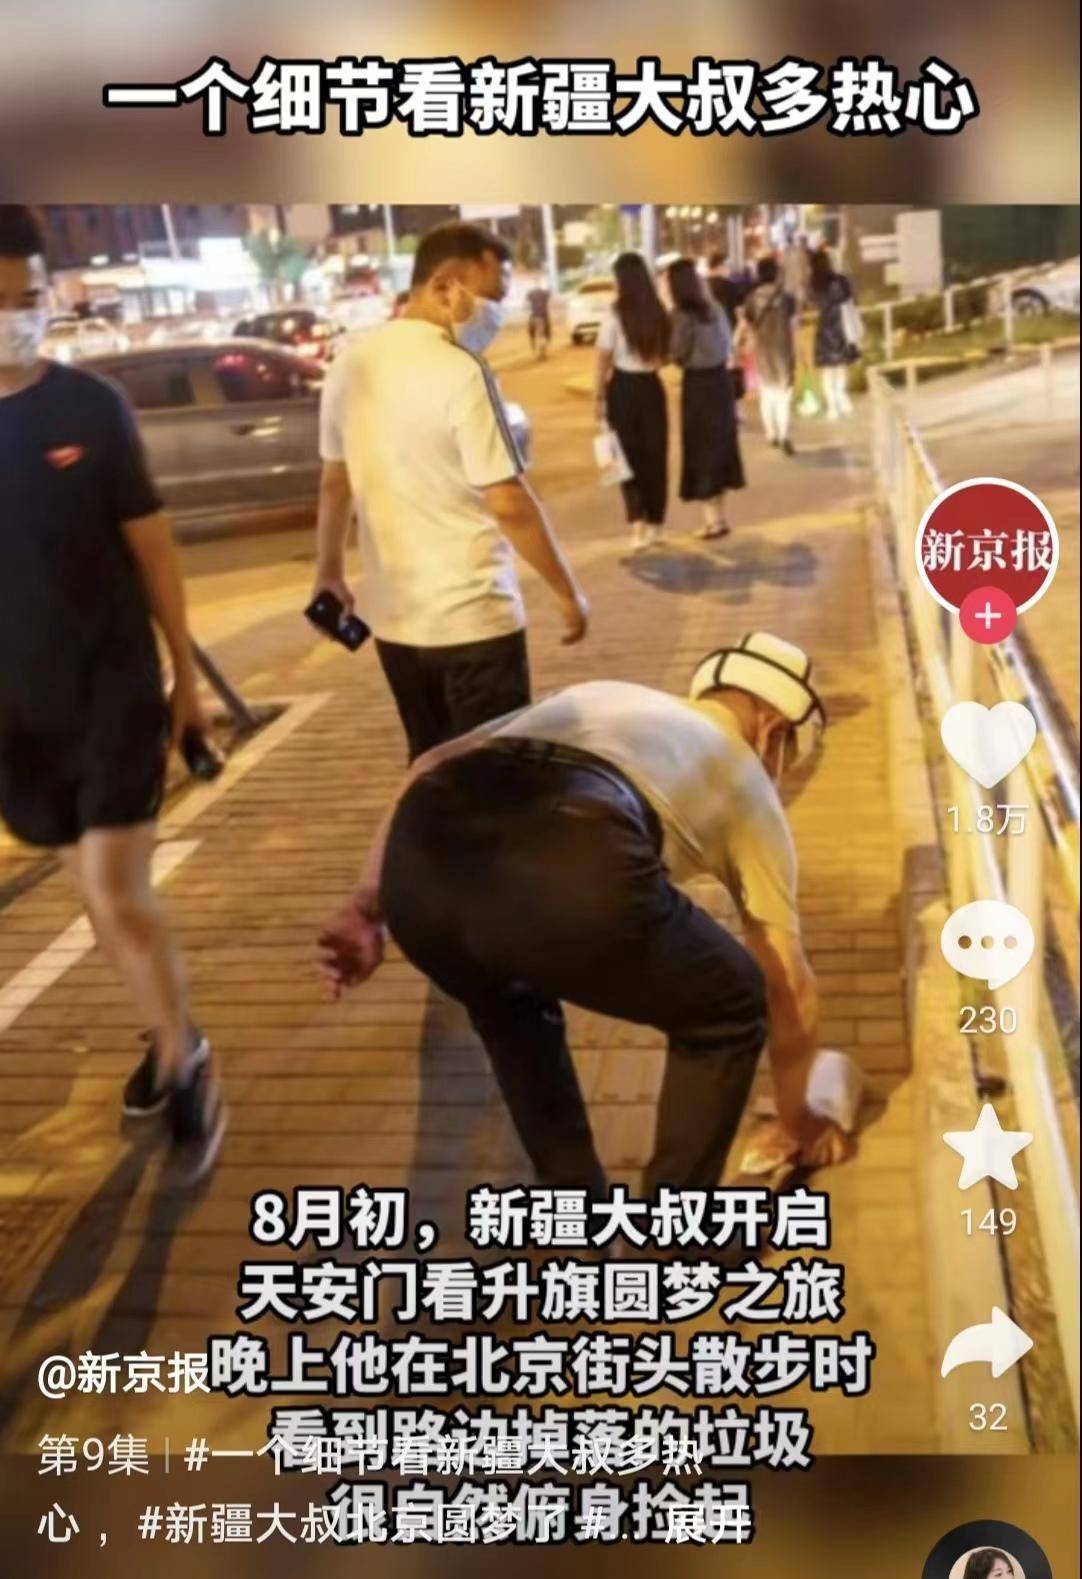 北京天安门:那个帮助推车的新疆党员大叔到北京天安门了北京天安门看升国旗